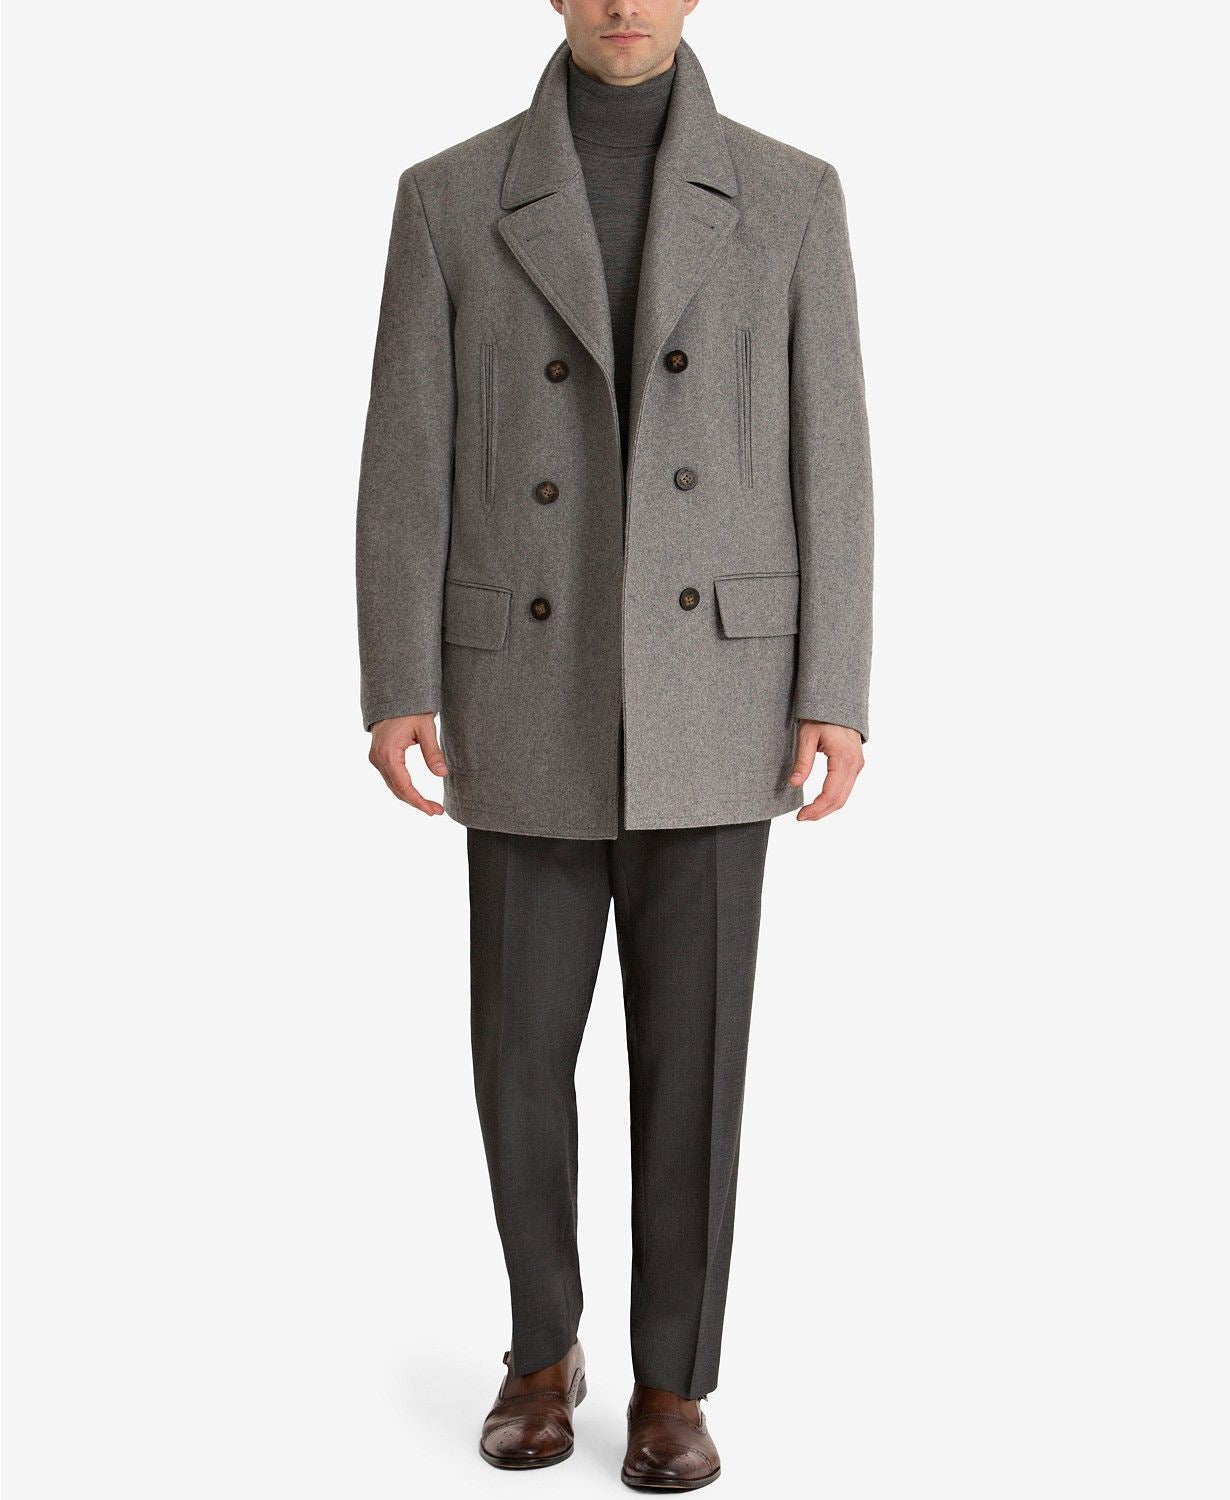 Lauren Ralph Lauren Mens Luke Solid Wool Blend Peacoat 38S Grey Coat